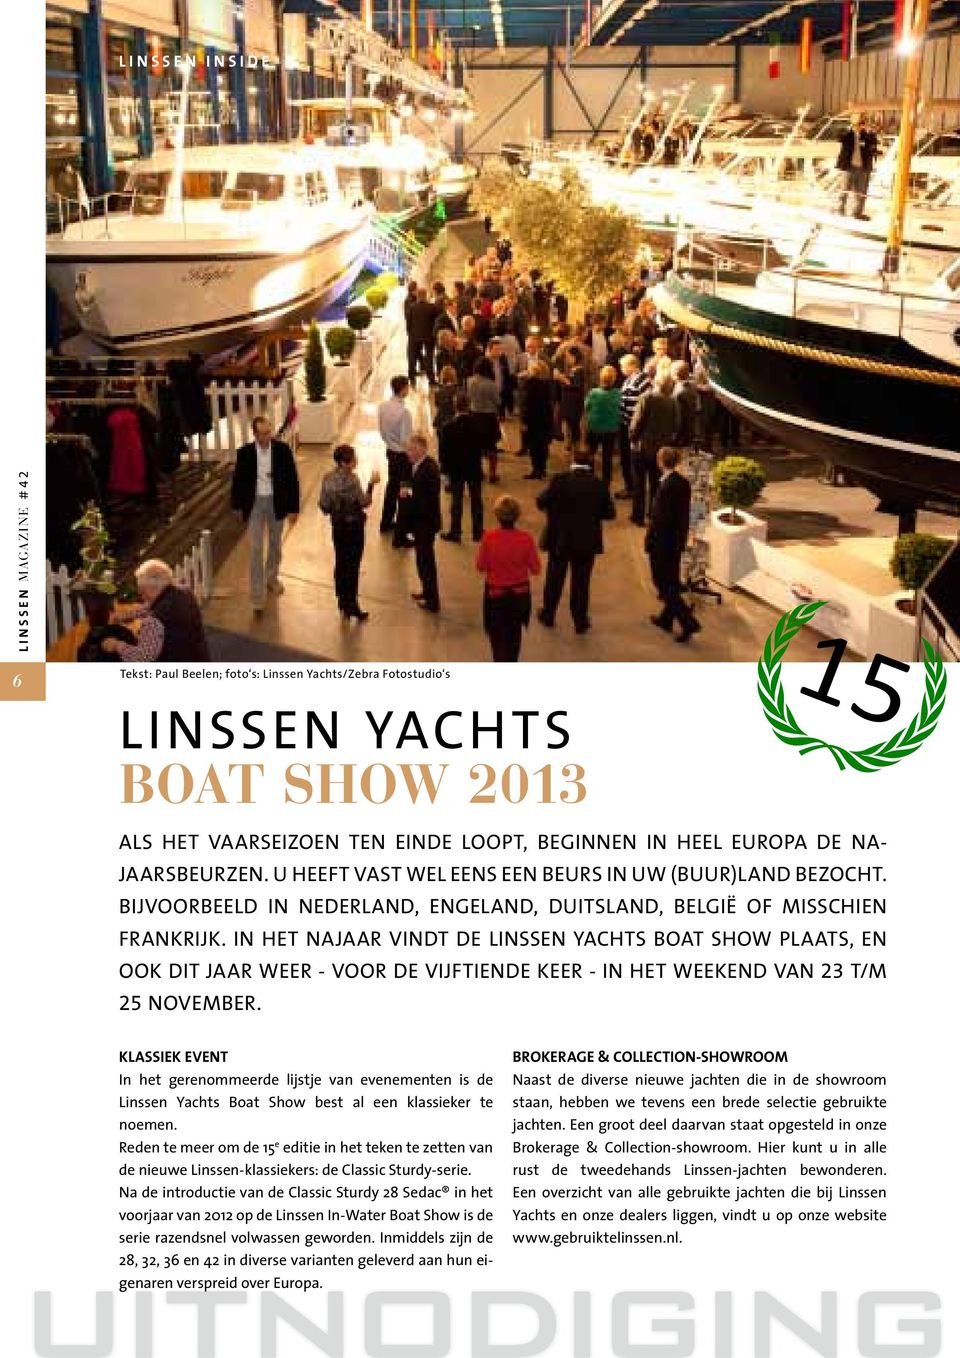 In het najaar vindt de Linssen Yachts Boat Show plaats, en ook dit jaar weer - voor de vijftiende keer - in het weekend van 23 t/m 25 november.